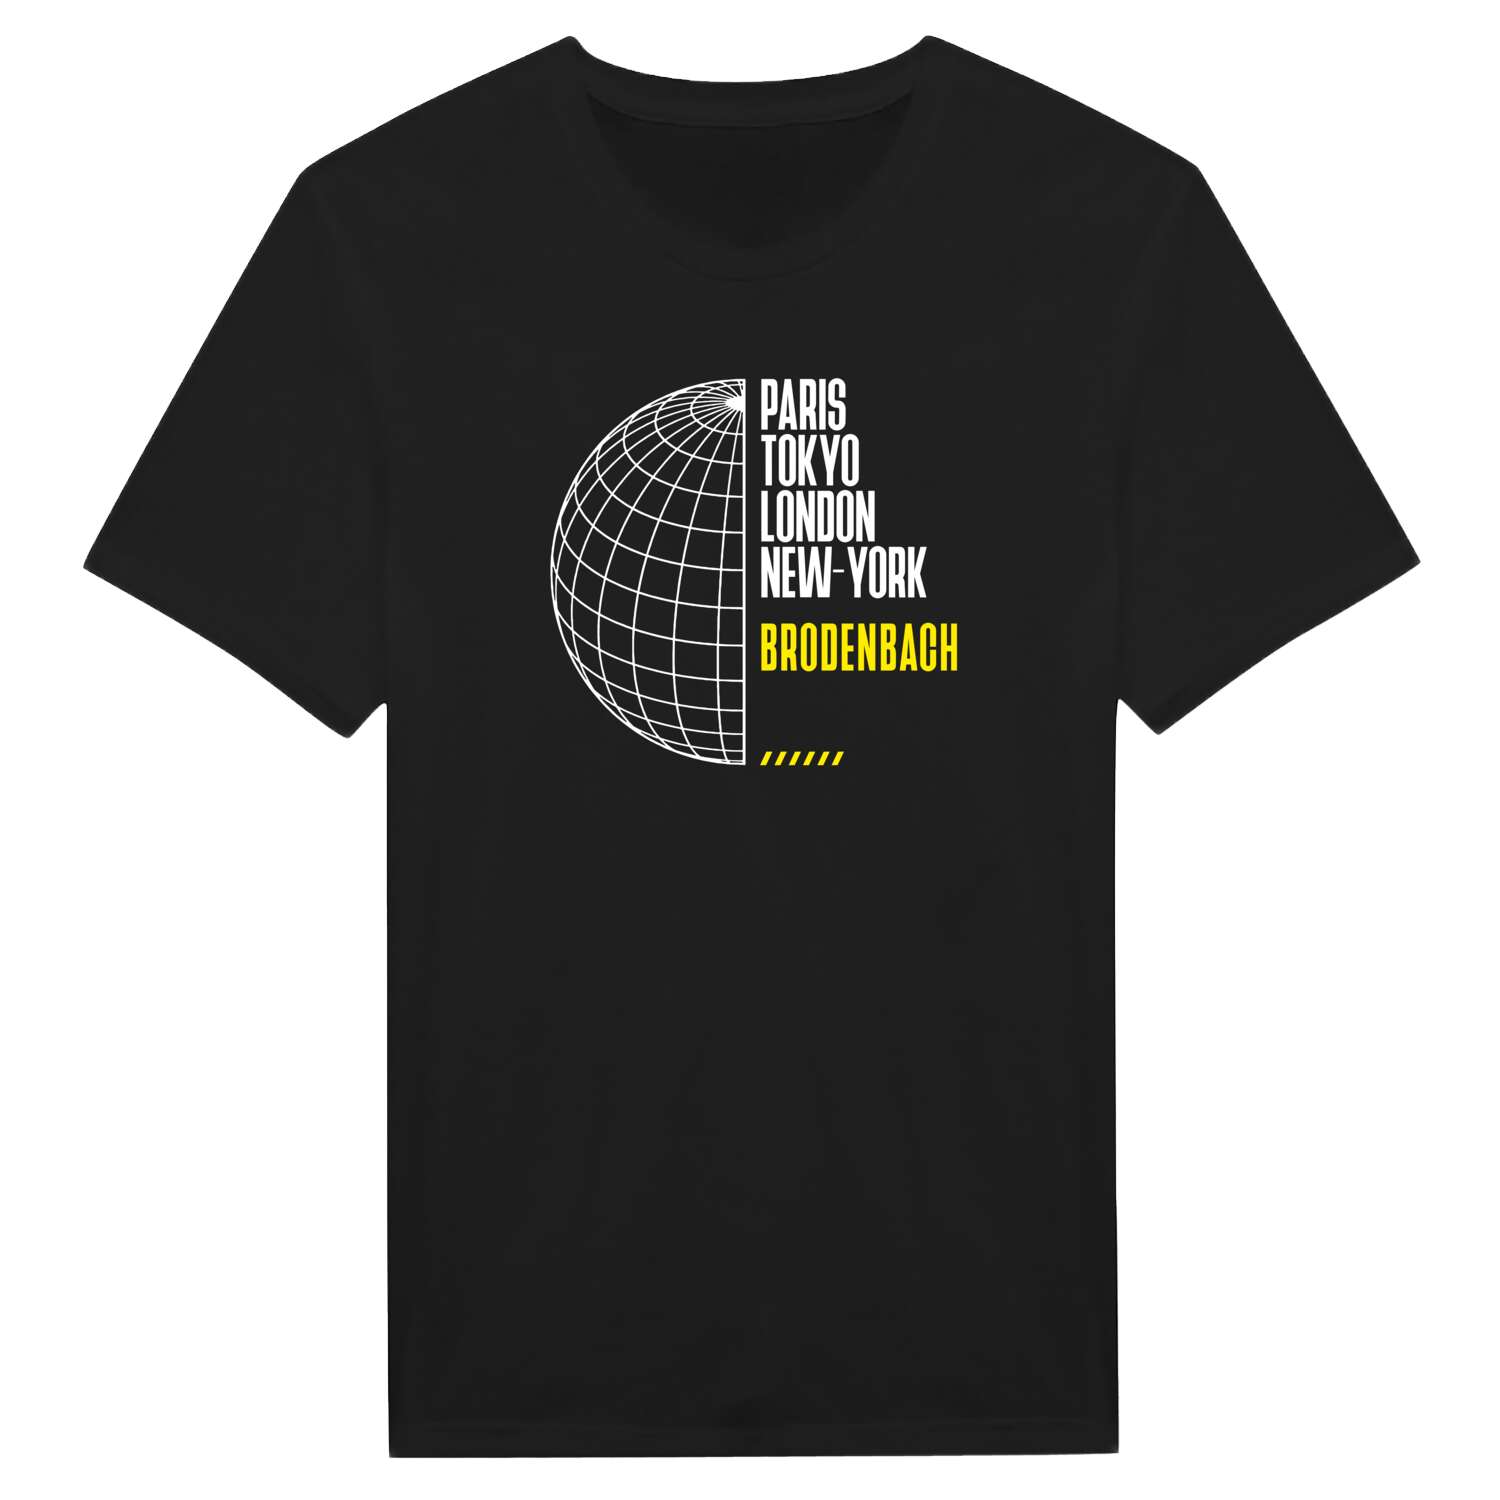 Brodenbach T-Shirt »Paris Tokyo London«